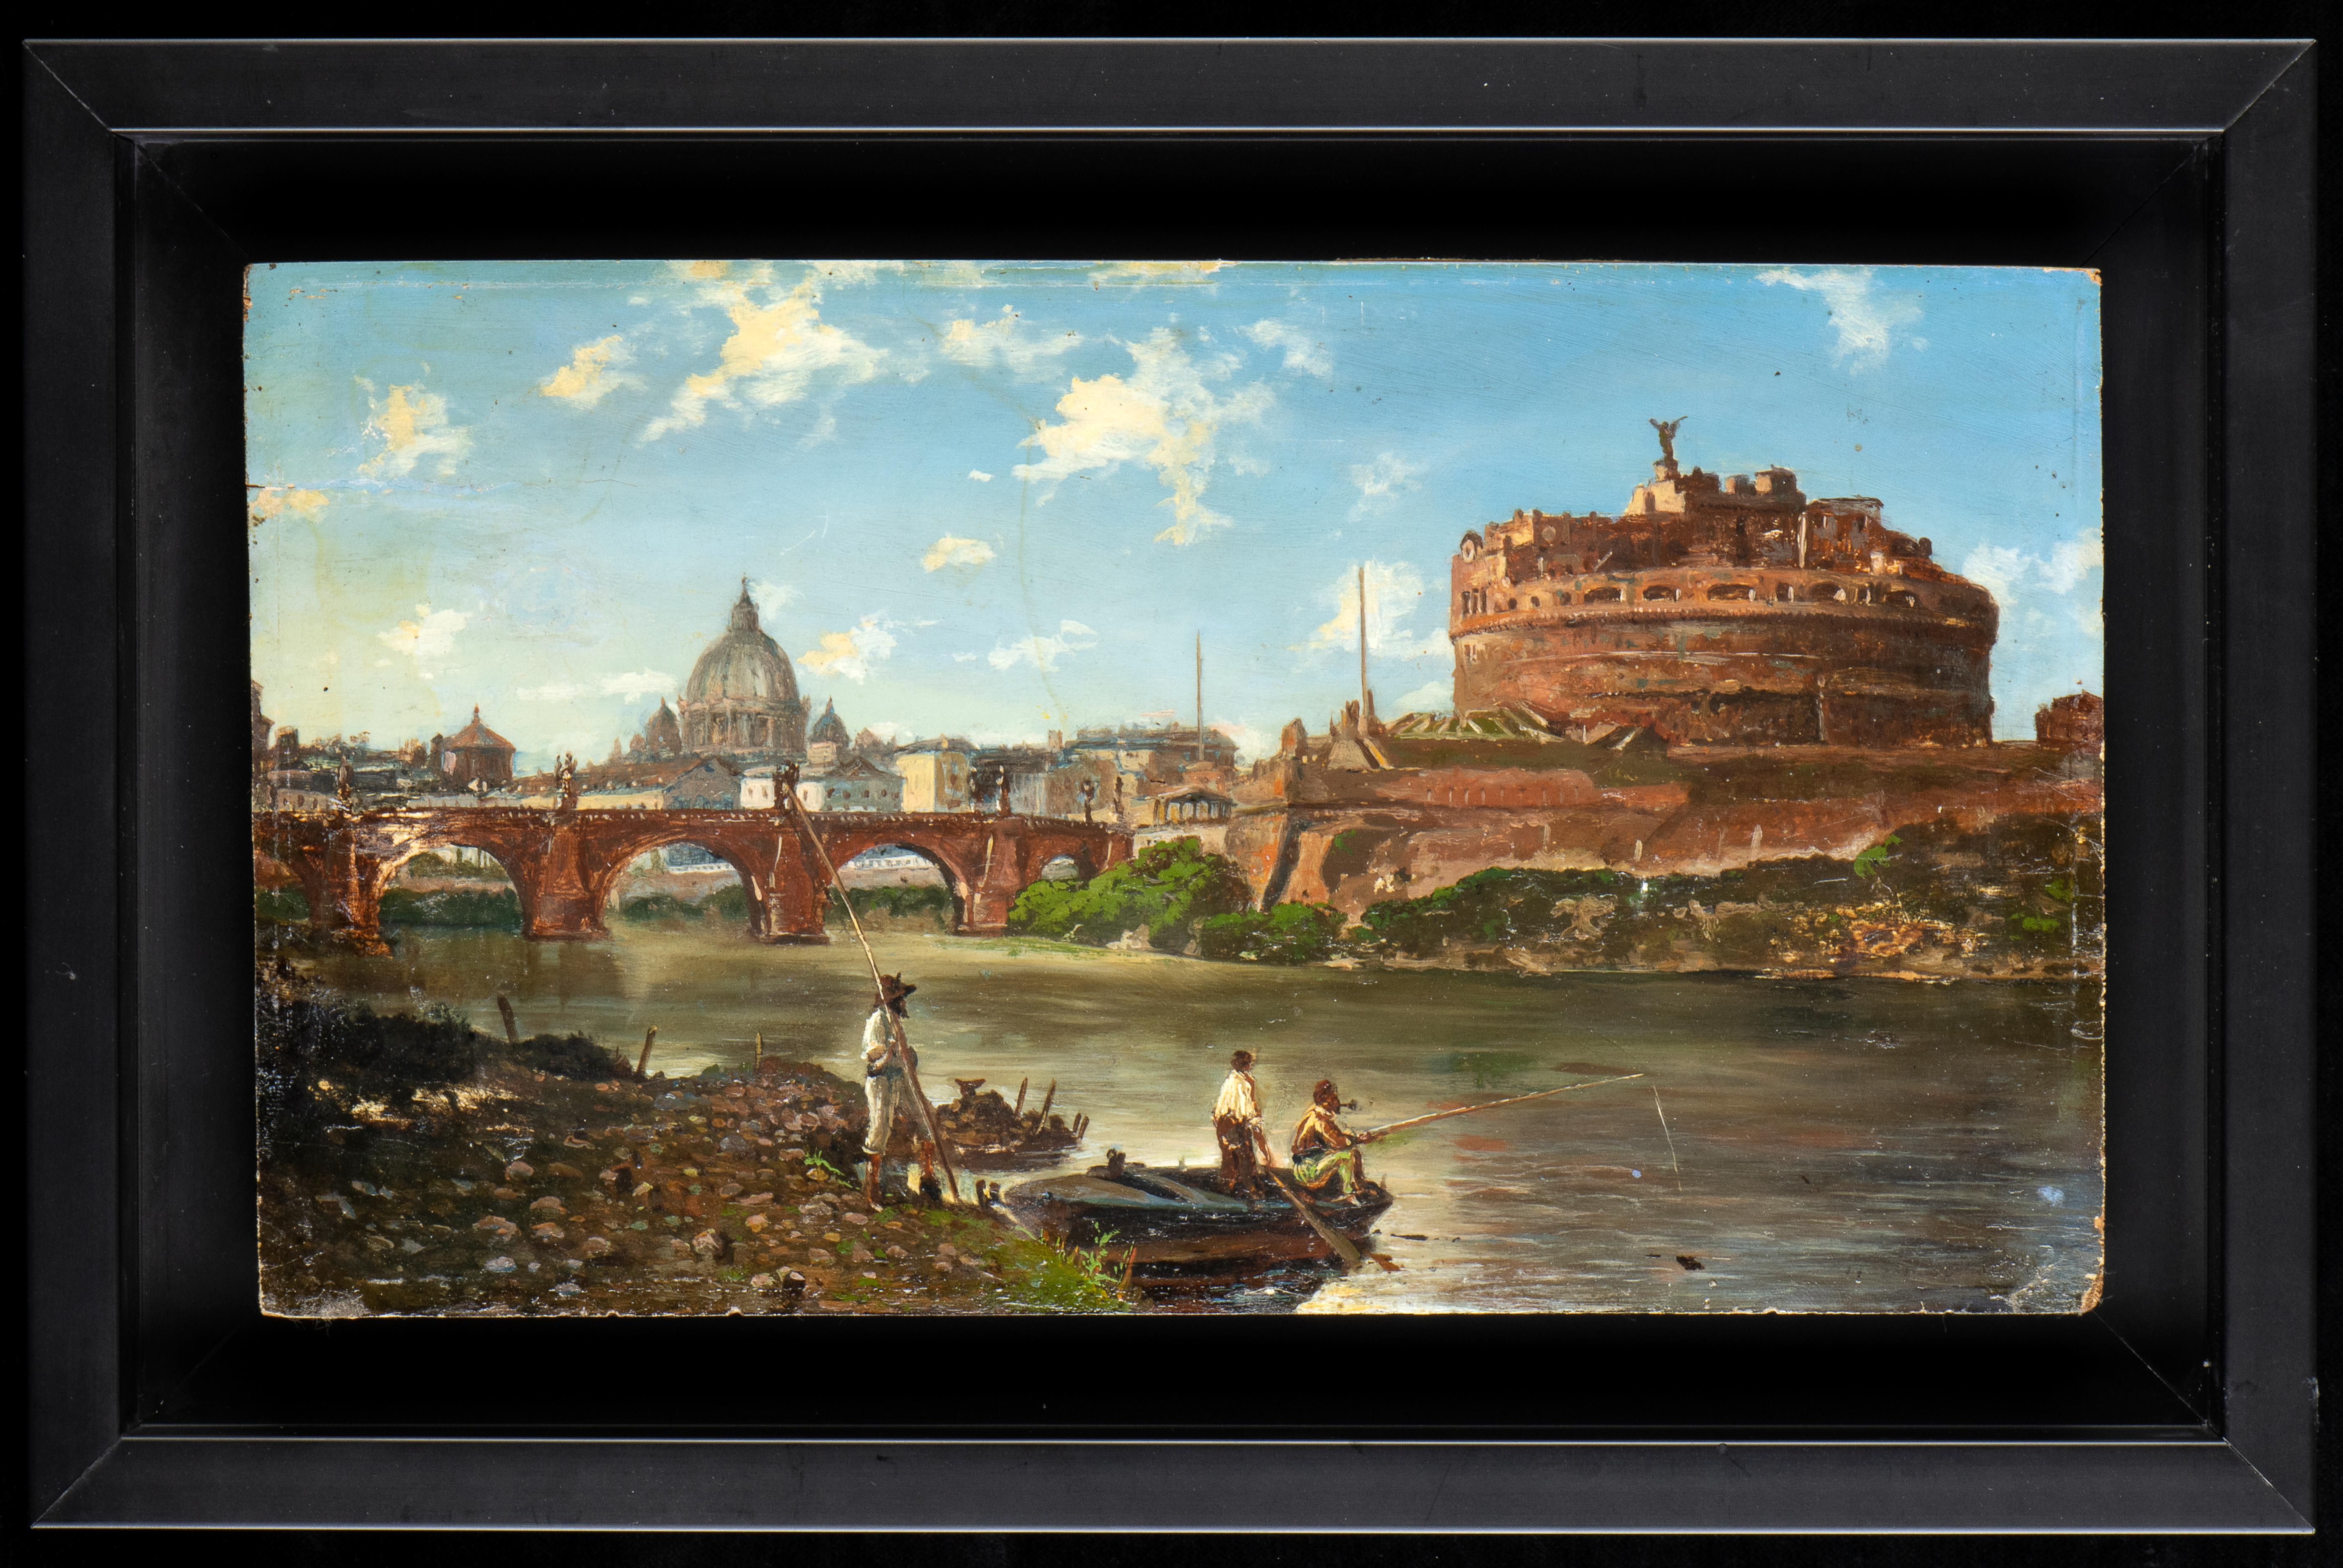 Peinture à l'huile du Grand Tour de Rome, vue du château de Sant'Angelo et de la rivière Tiber